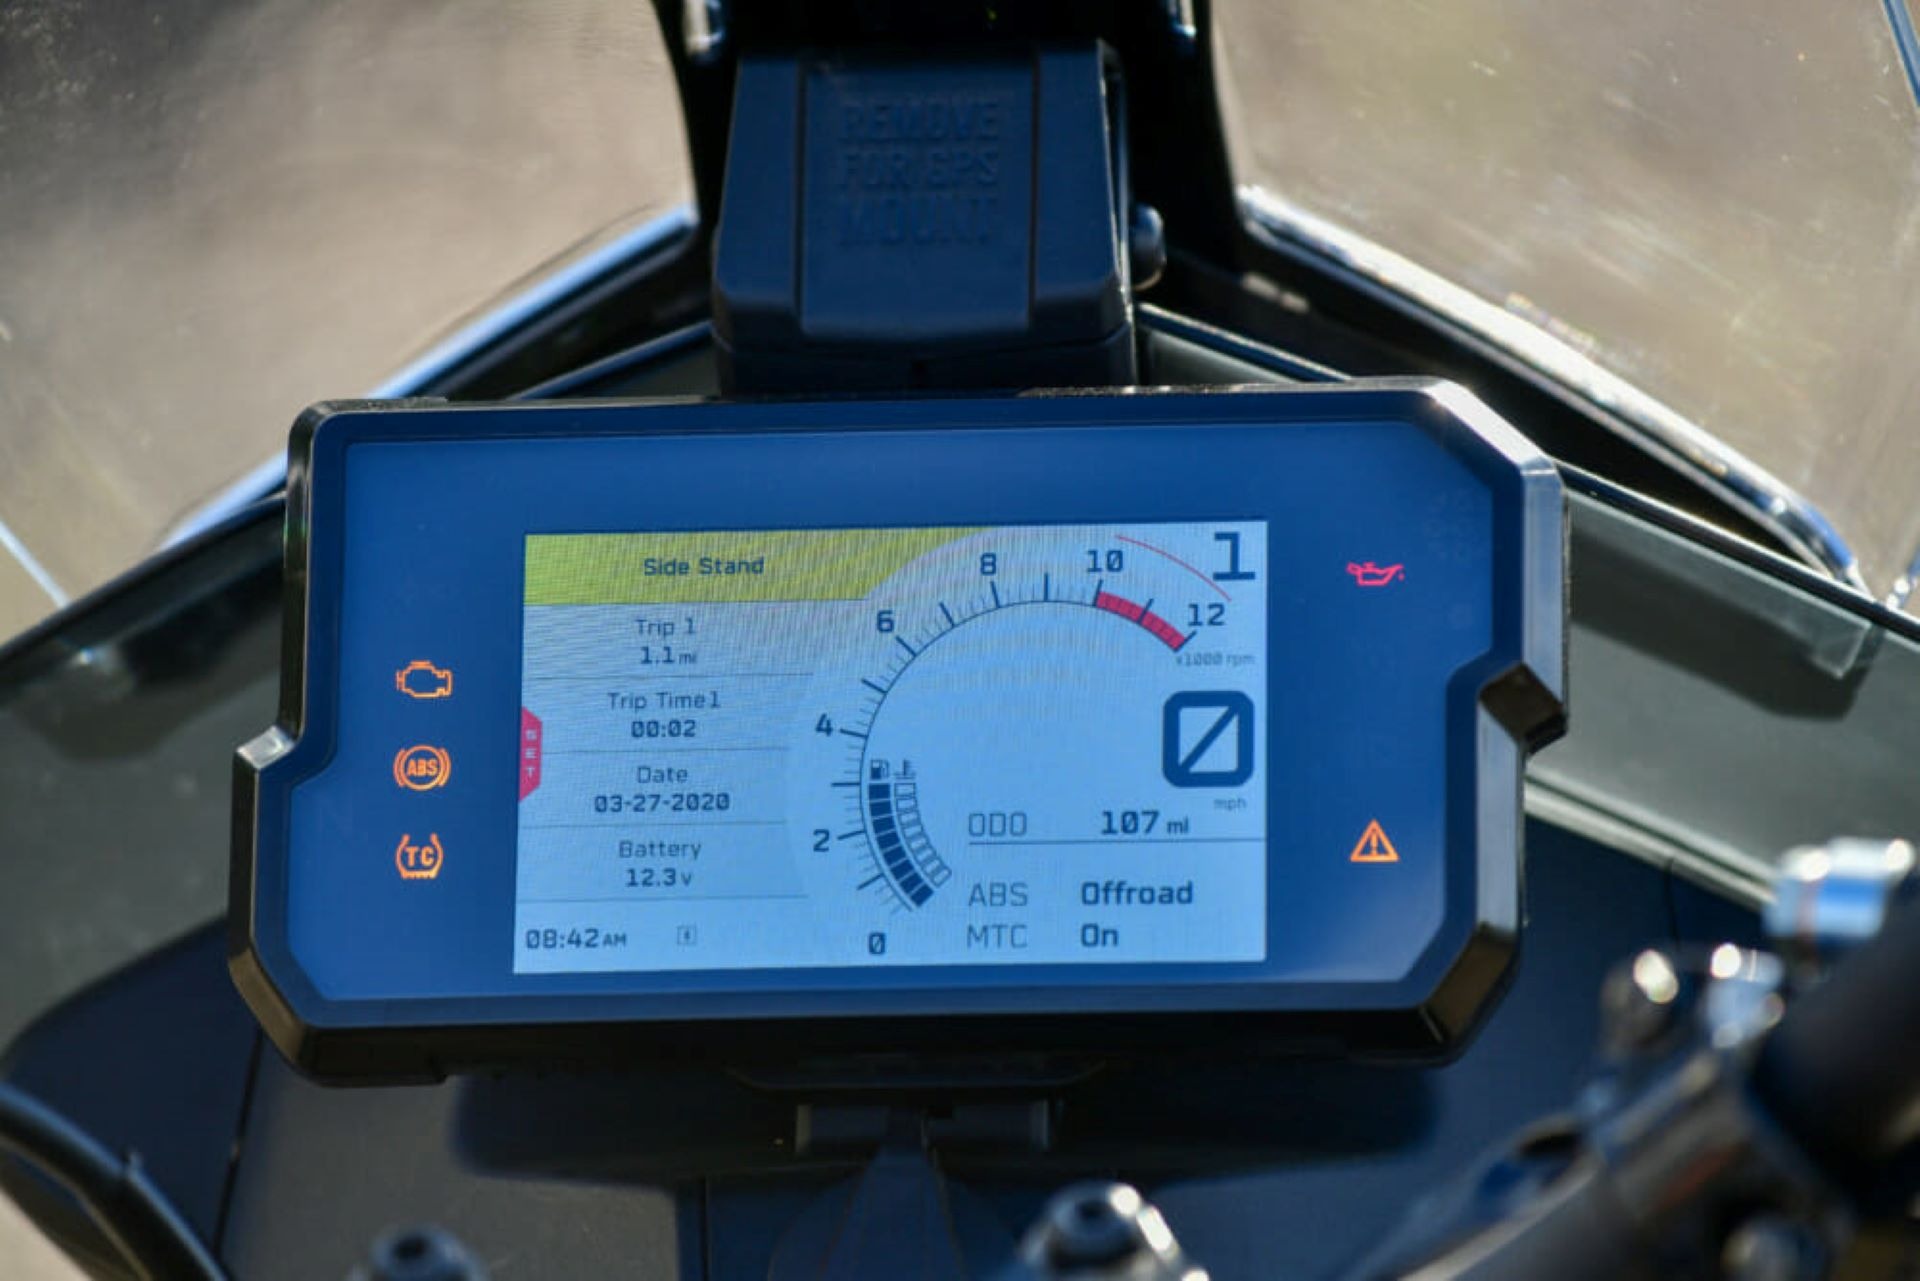 Closeup of KTM 390 display